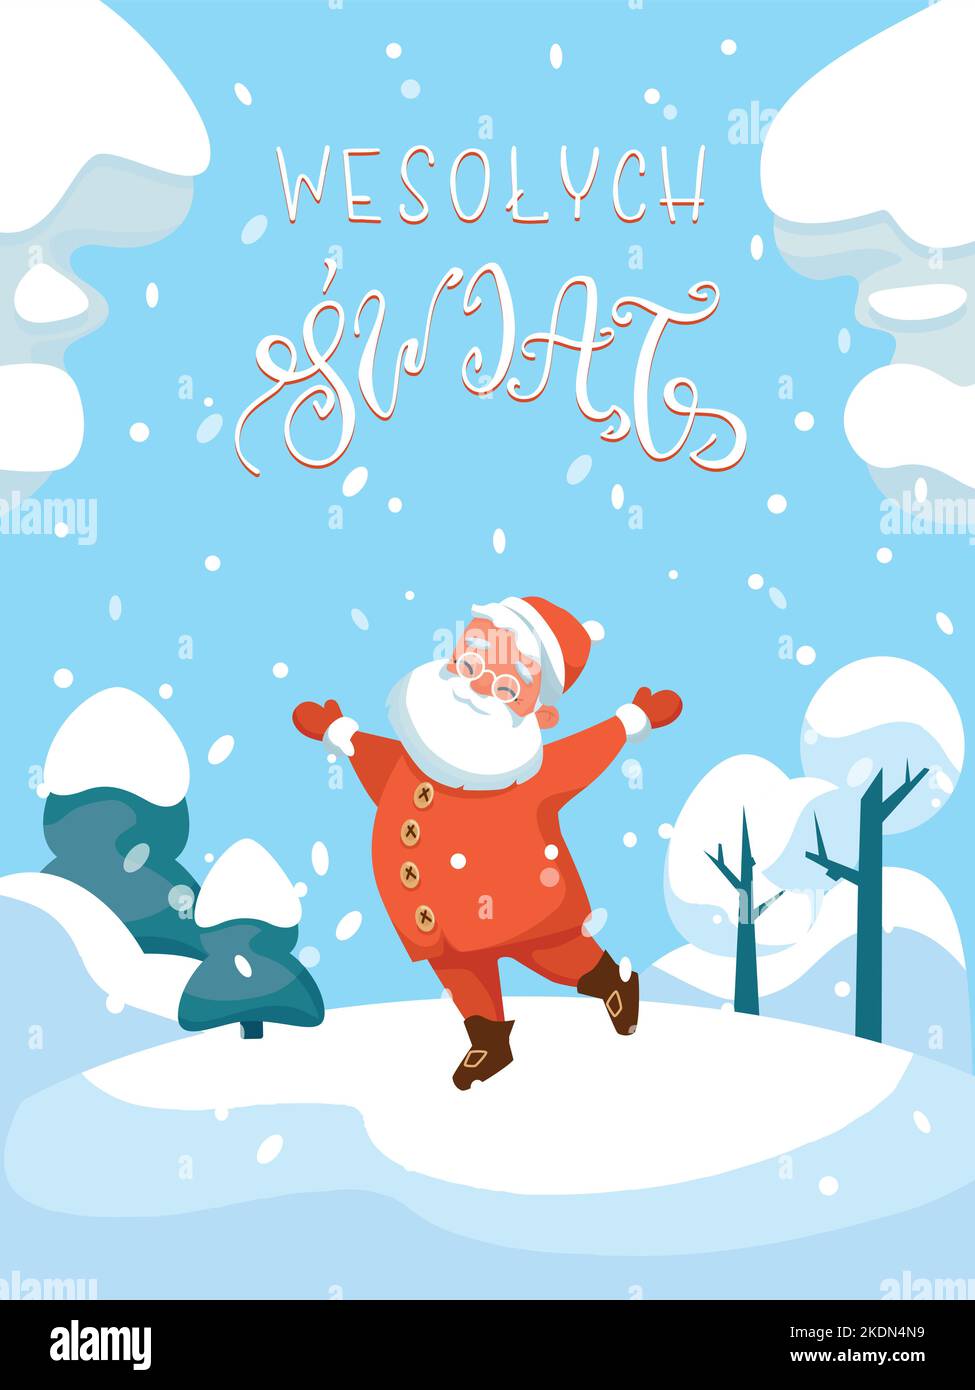 Swiety Mikolaj Polish Santa Claus Happy at Winter Stock Vector